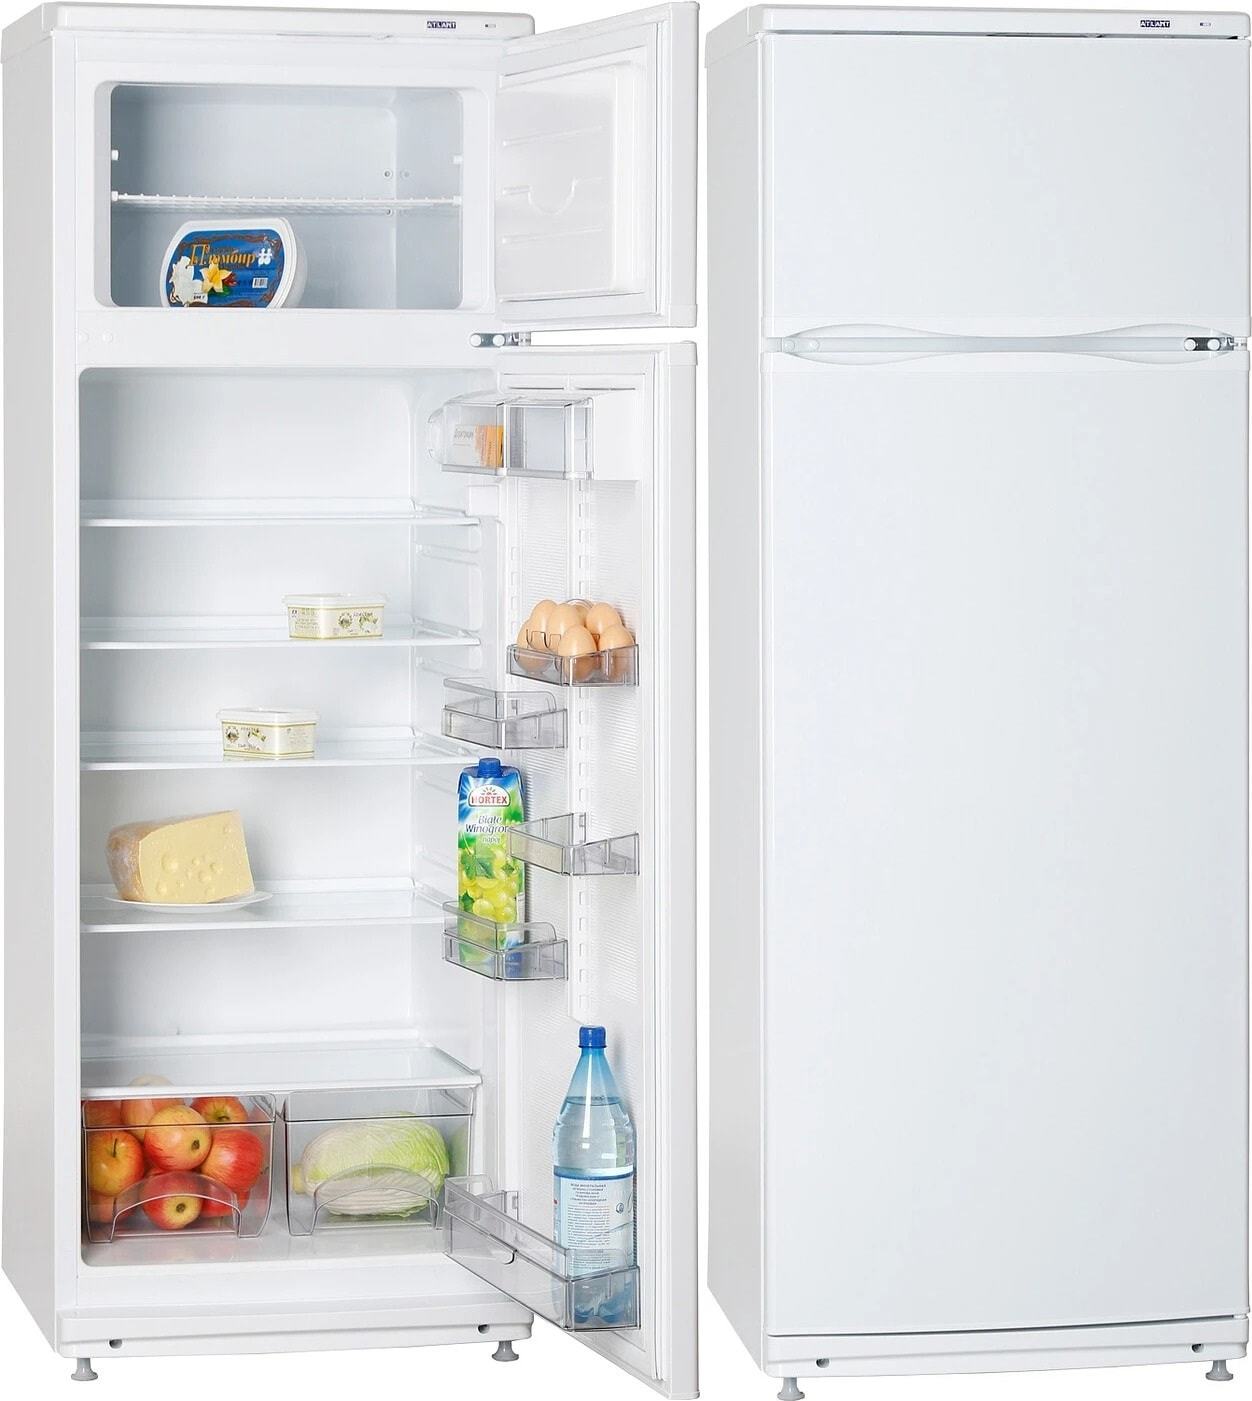 Холодильник Atlant MXM 2826-90